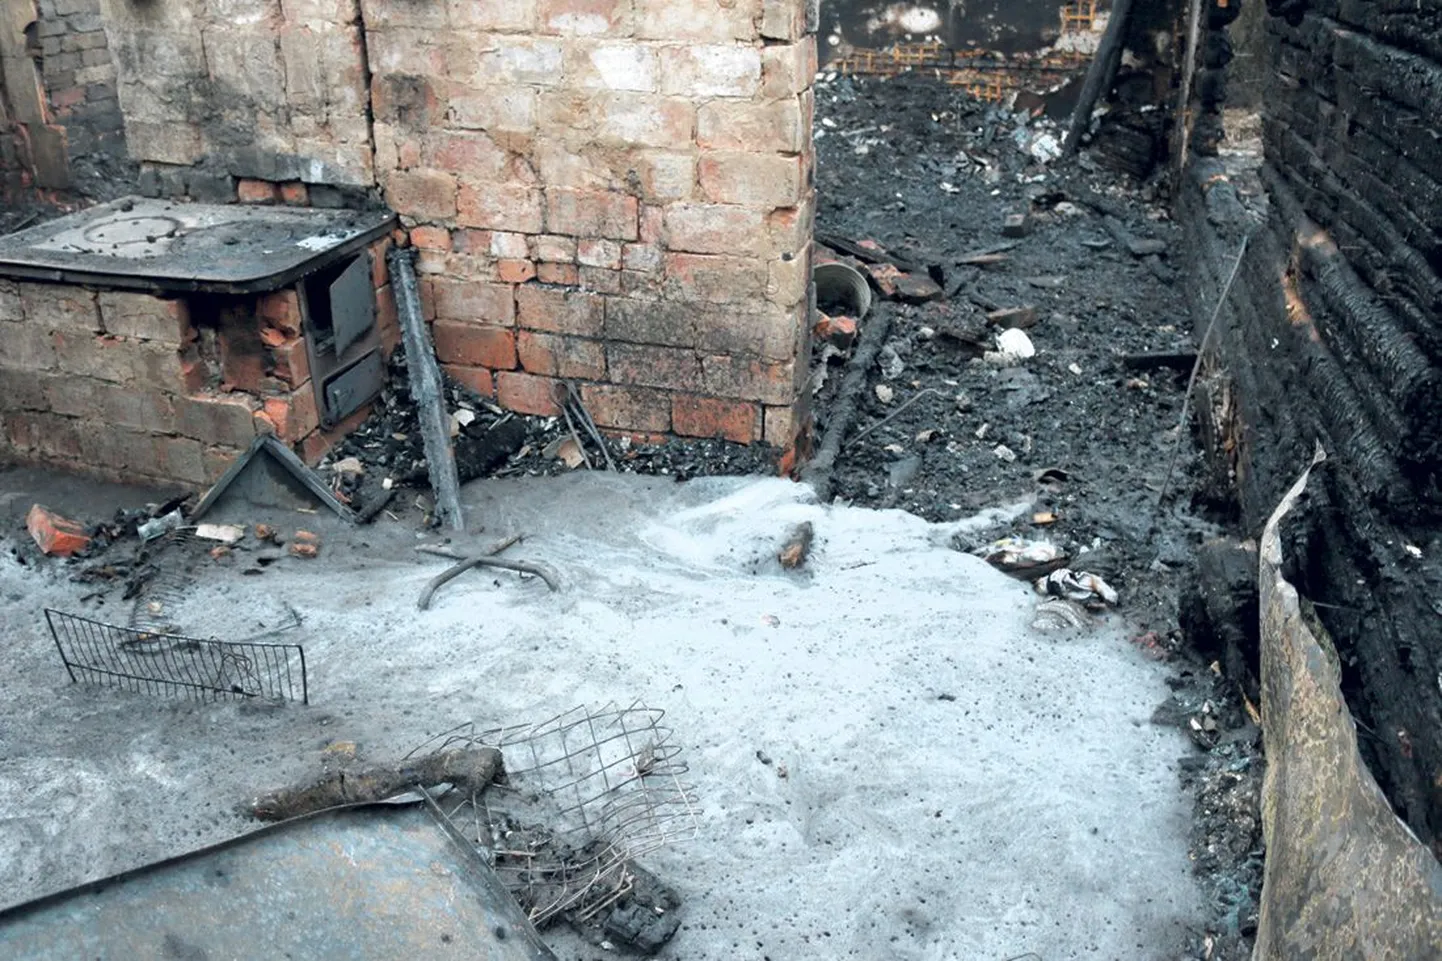 Tartu vallas Tammistus hukkus selles majas 27. novembril puhkenud tulekahjus vanem naine. Lõuna päästekeskuse teatel sai põleng alguse katkisest pliidist, mida päev enne õnnetust oli püütud iseseisvalt parandada. Tulekahju kustutamise käigus lagunes pliit veel rohkem ära. Samas majapidamises varem elanikke nõustamas käinud päästjad olid märganud ja märku andnud, et kogu hoone ja kütteseadmed olid ehituslikult väga kehvas seisukorras.